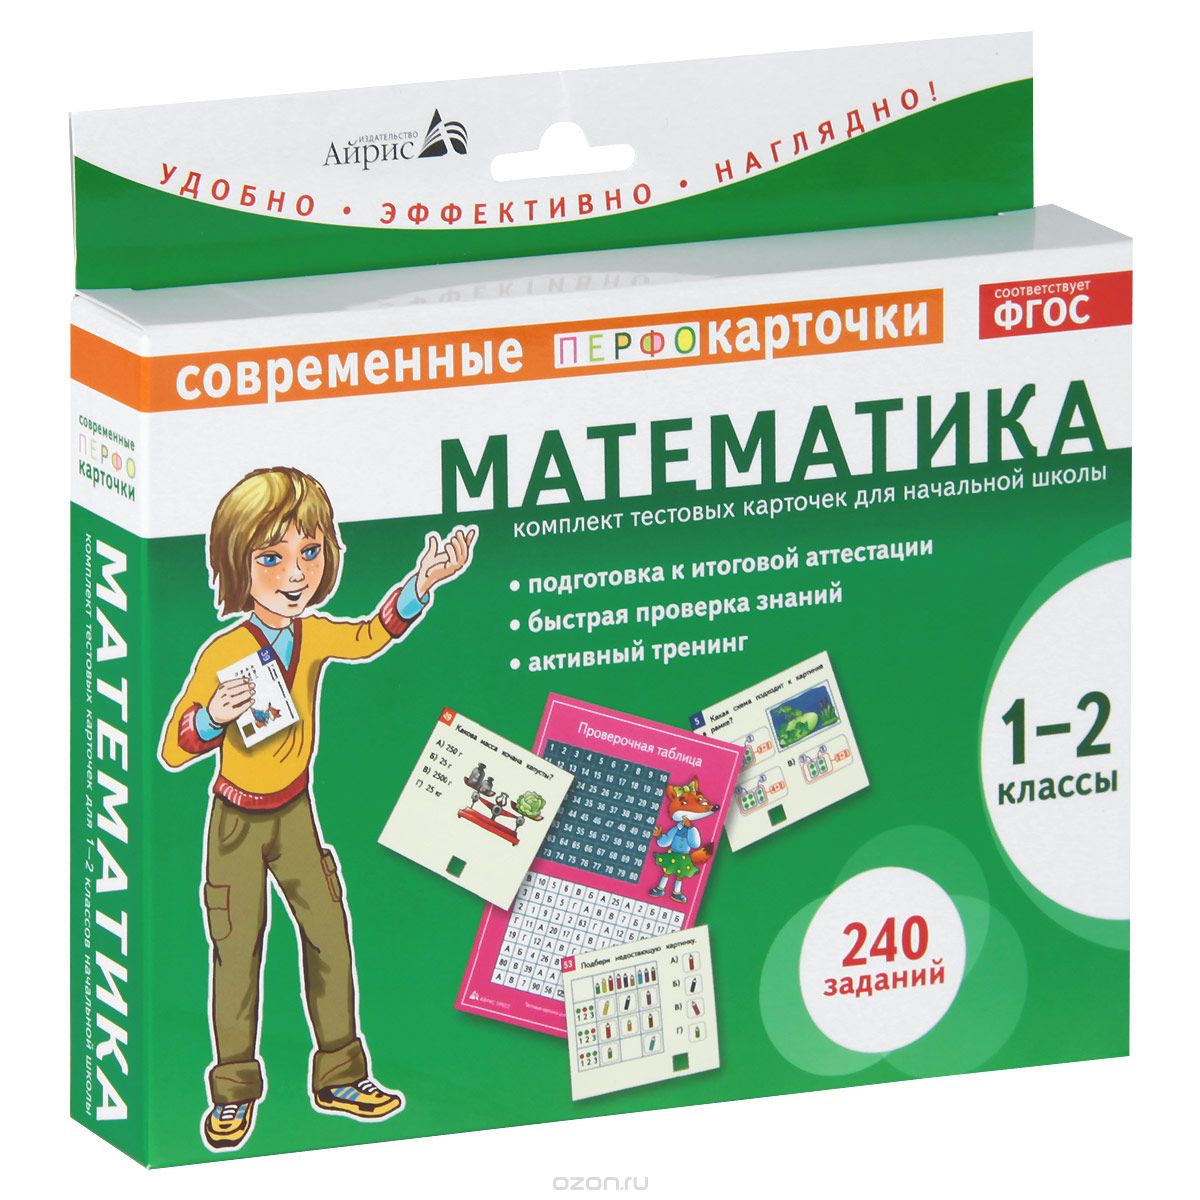 Скачать книгу "Математика. 1-2 классы (комплект из 120 тестовых карточек), Е. Н. Куликова"